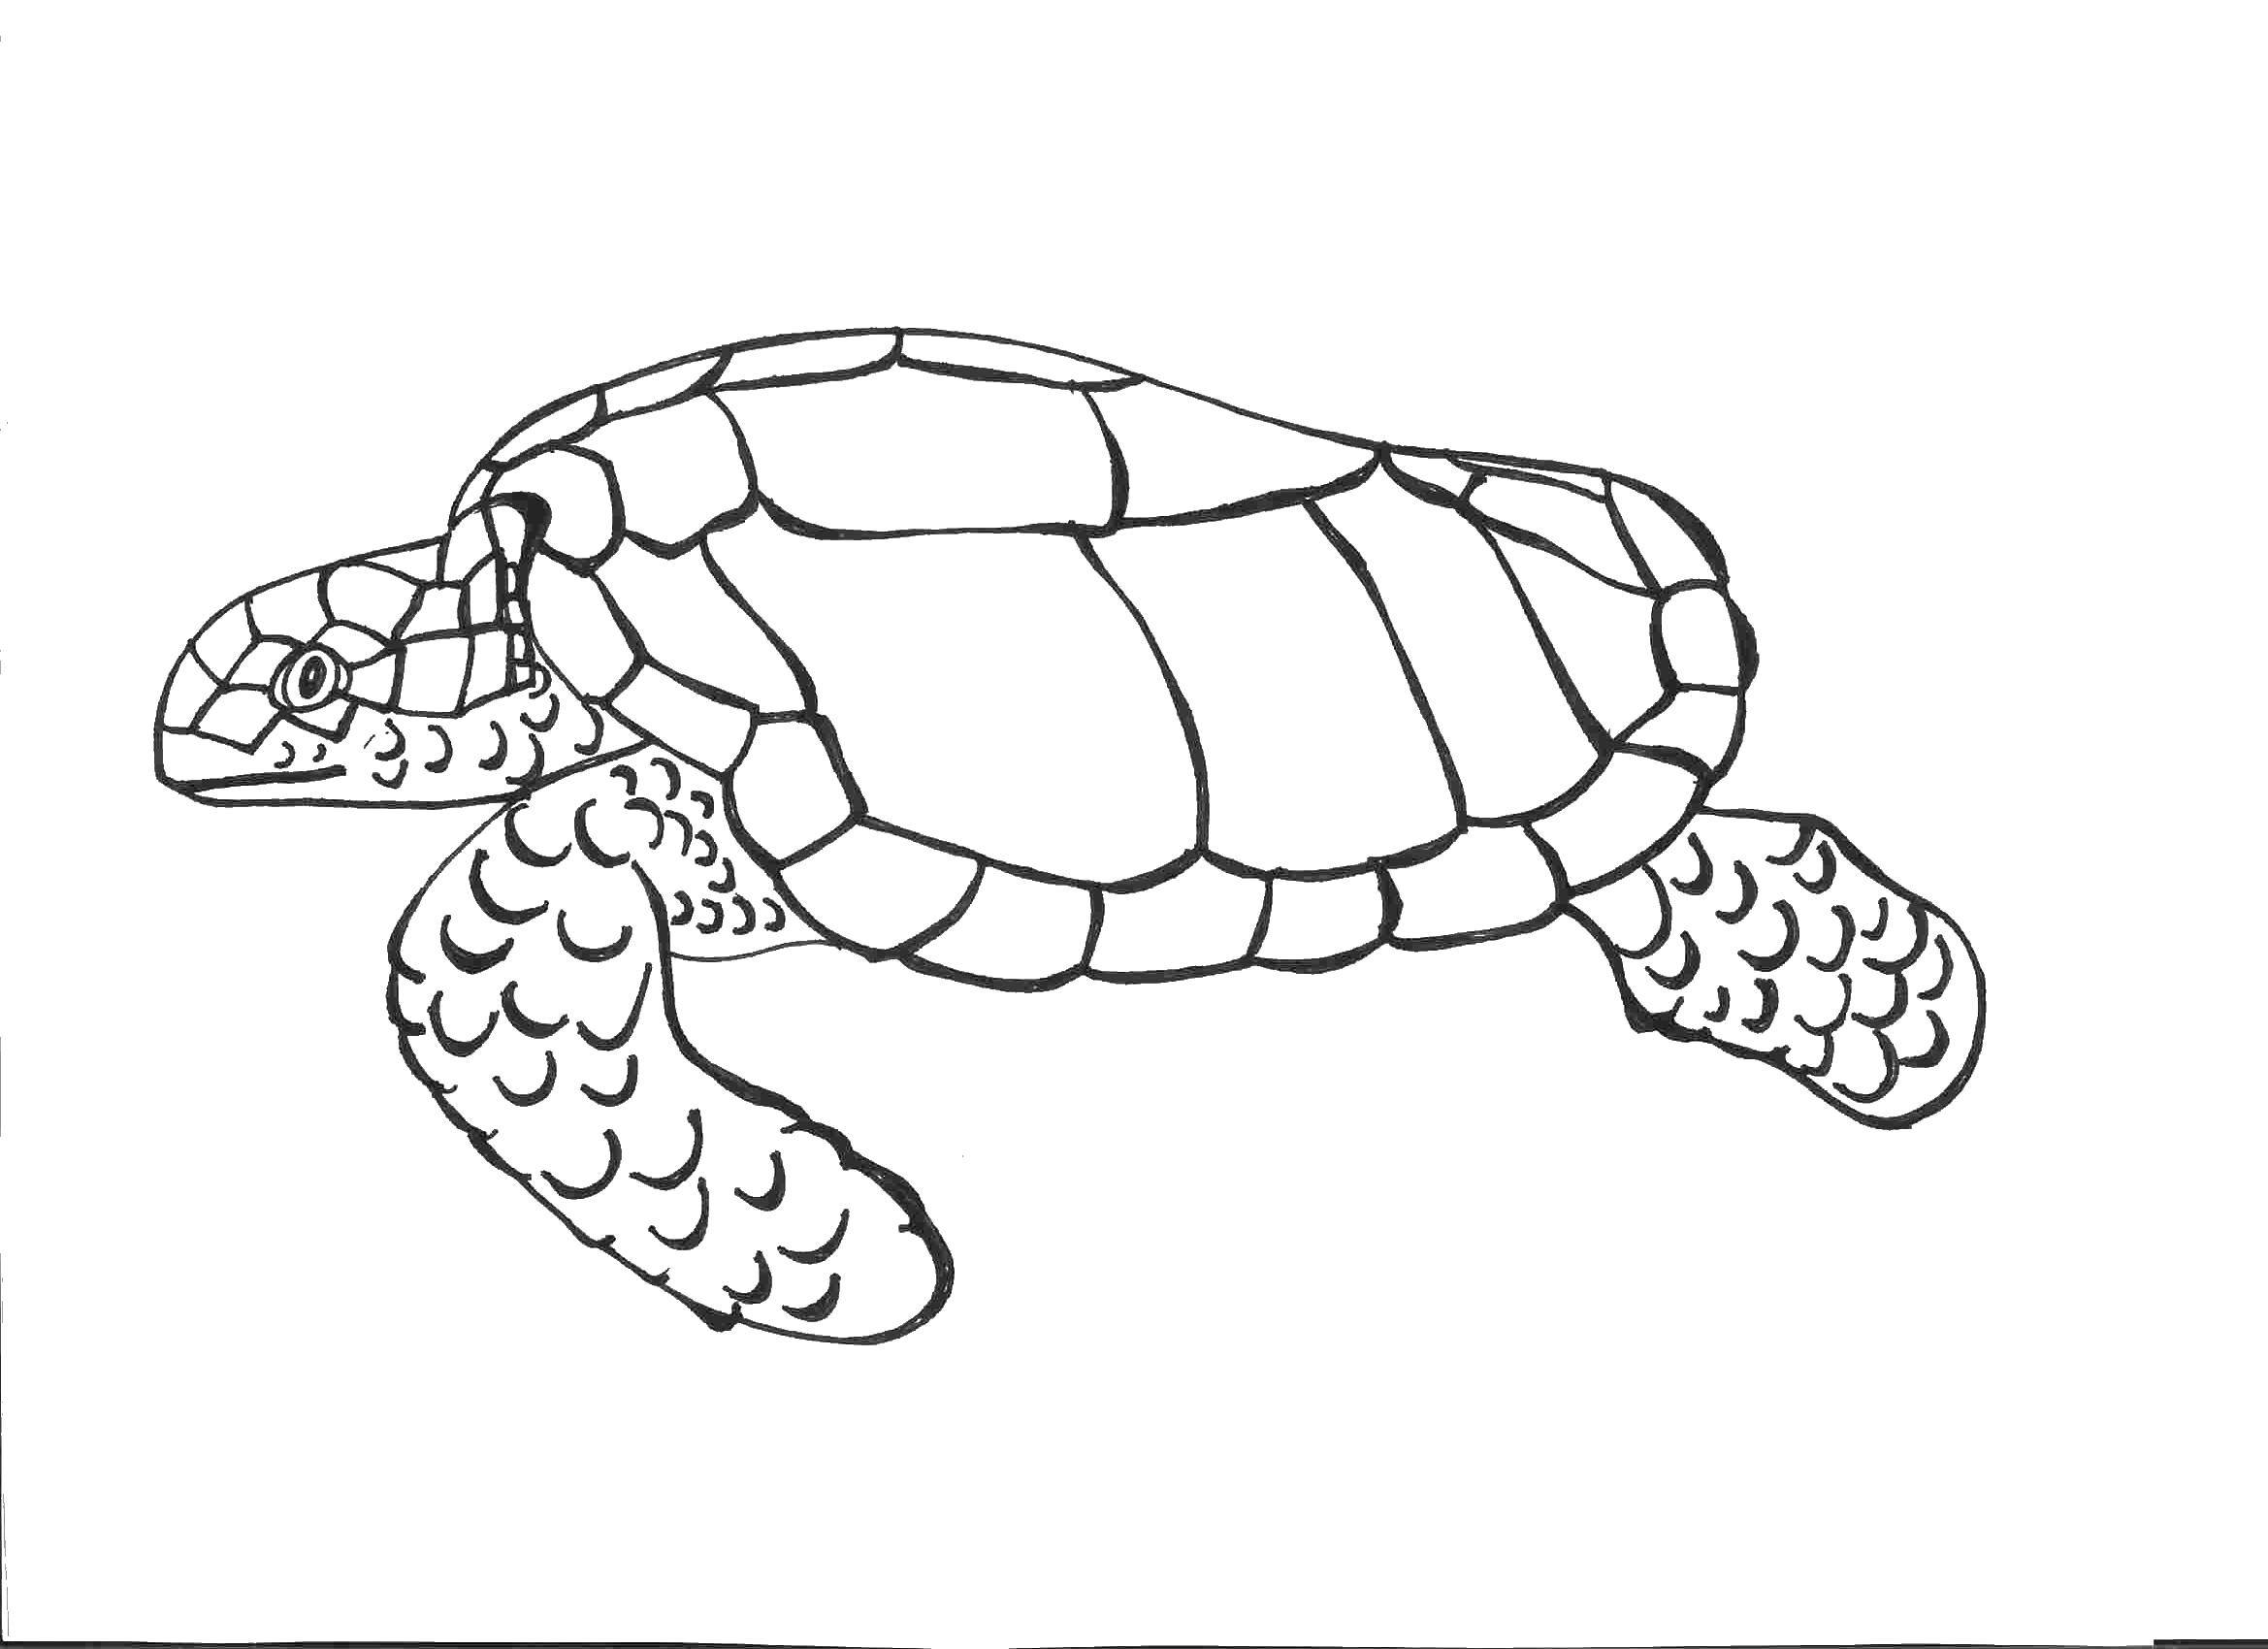 Coloring Old sea turtle. Category Sea turtle. Tags:  Reptile, turtle.